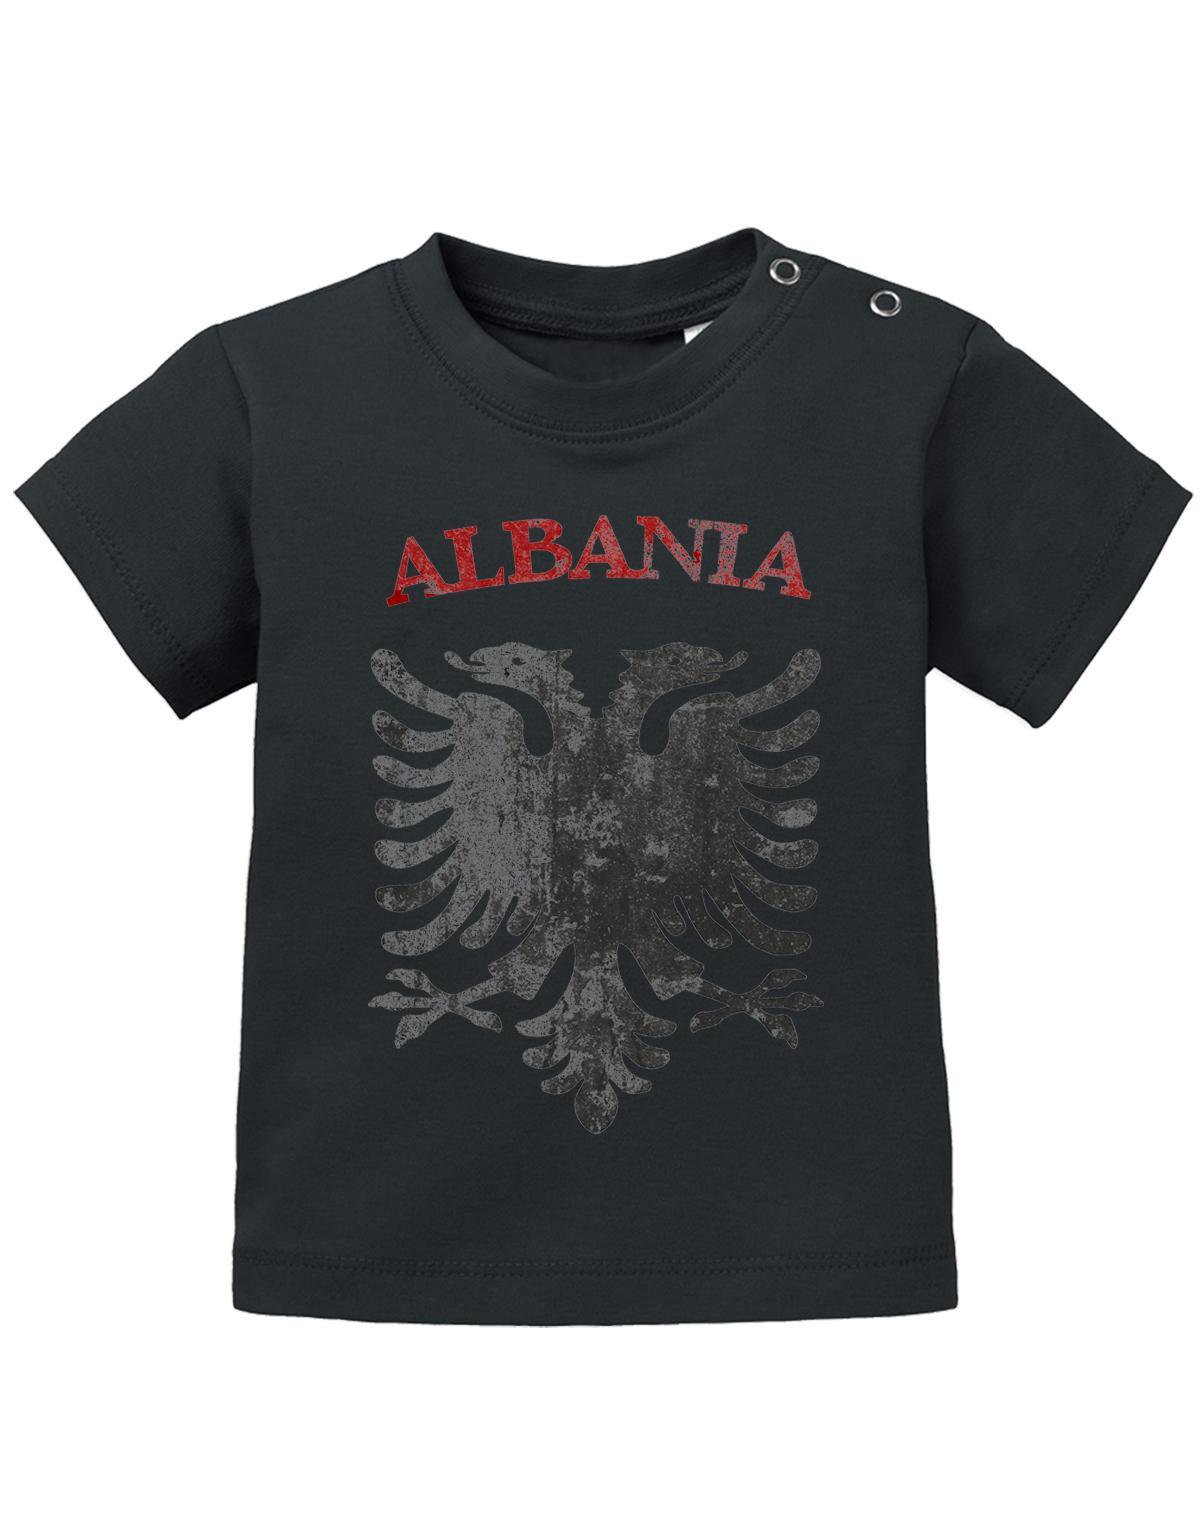 Albanien T Shirt für Junge und Mädchen. Albanischer Adler im Grunge Look und Albania Schriftzug. Schwarz